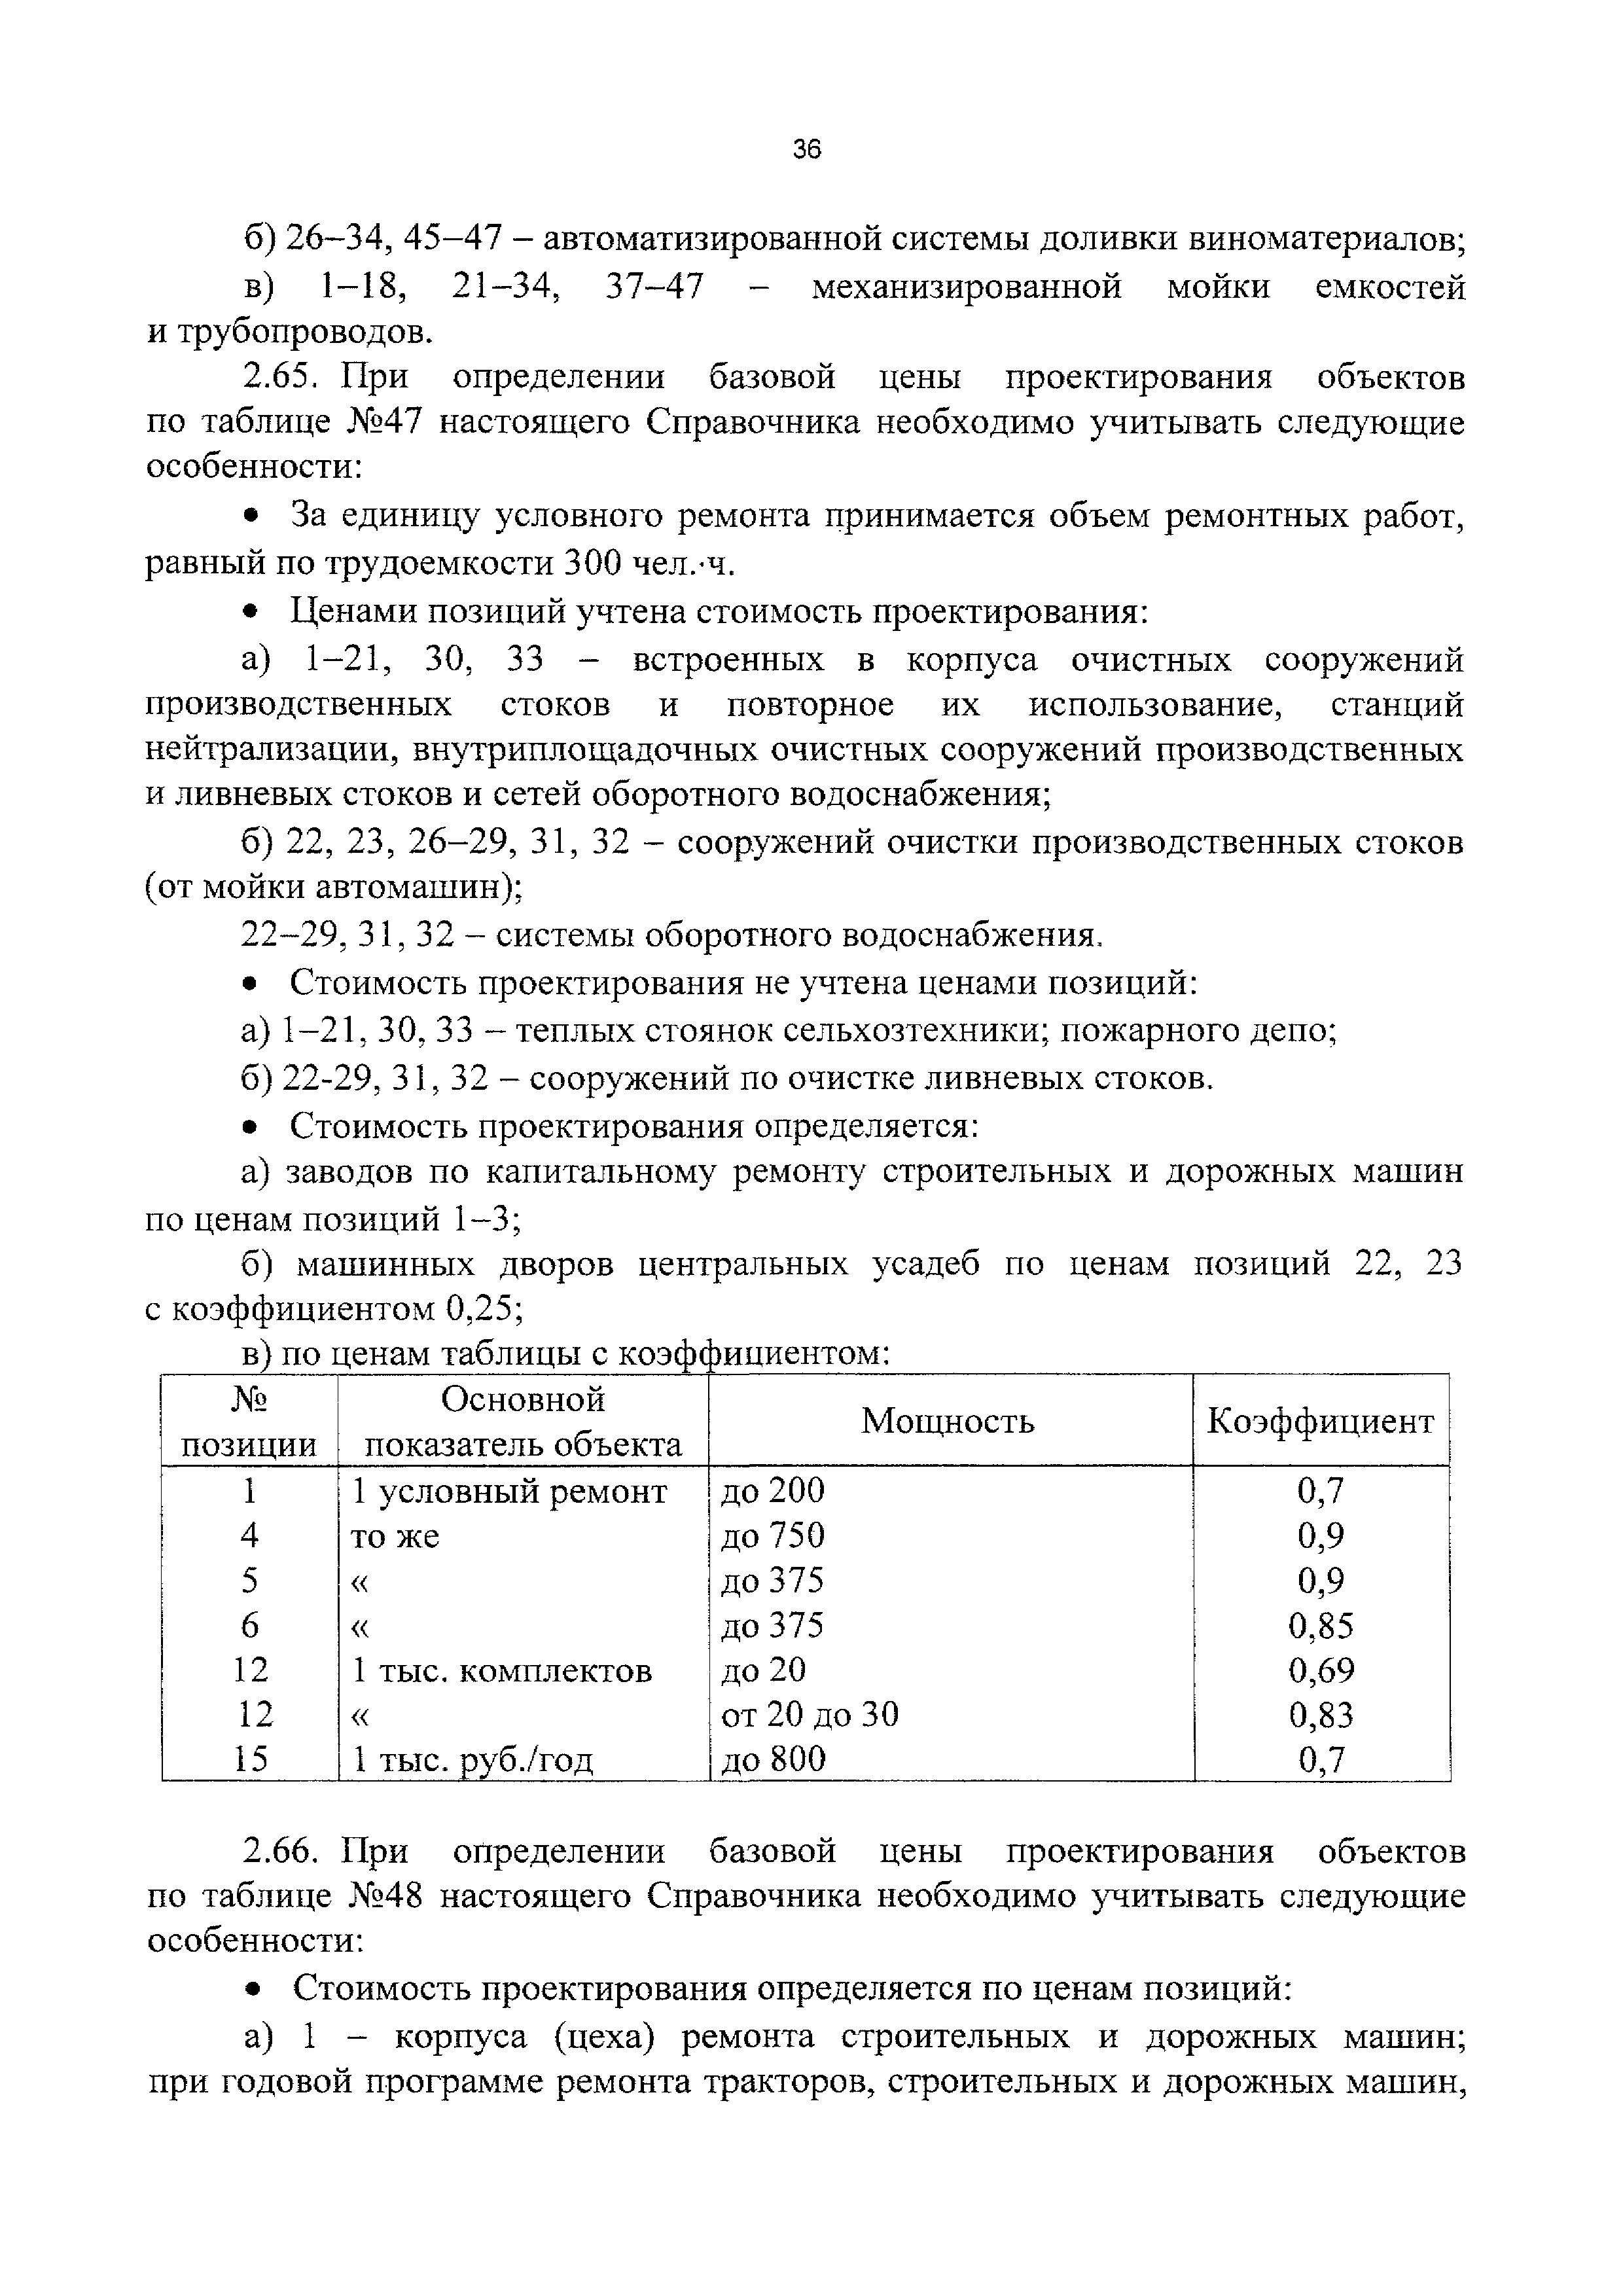 СБЦП 81-2001-11